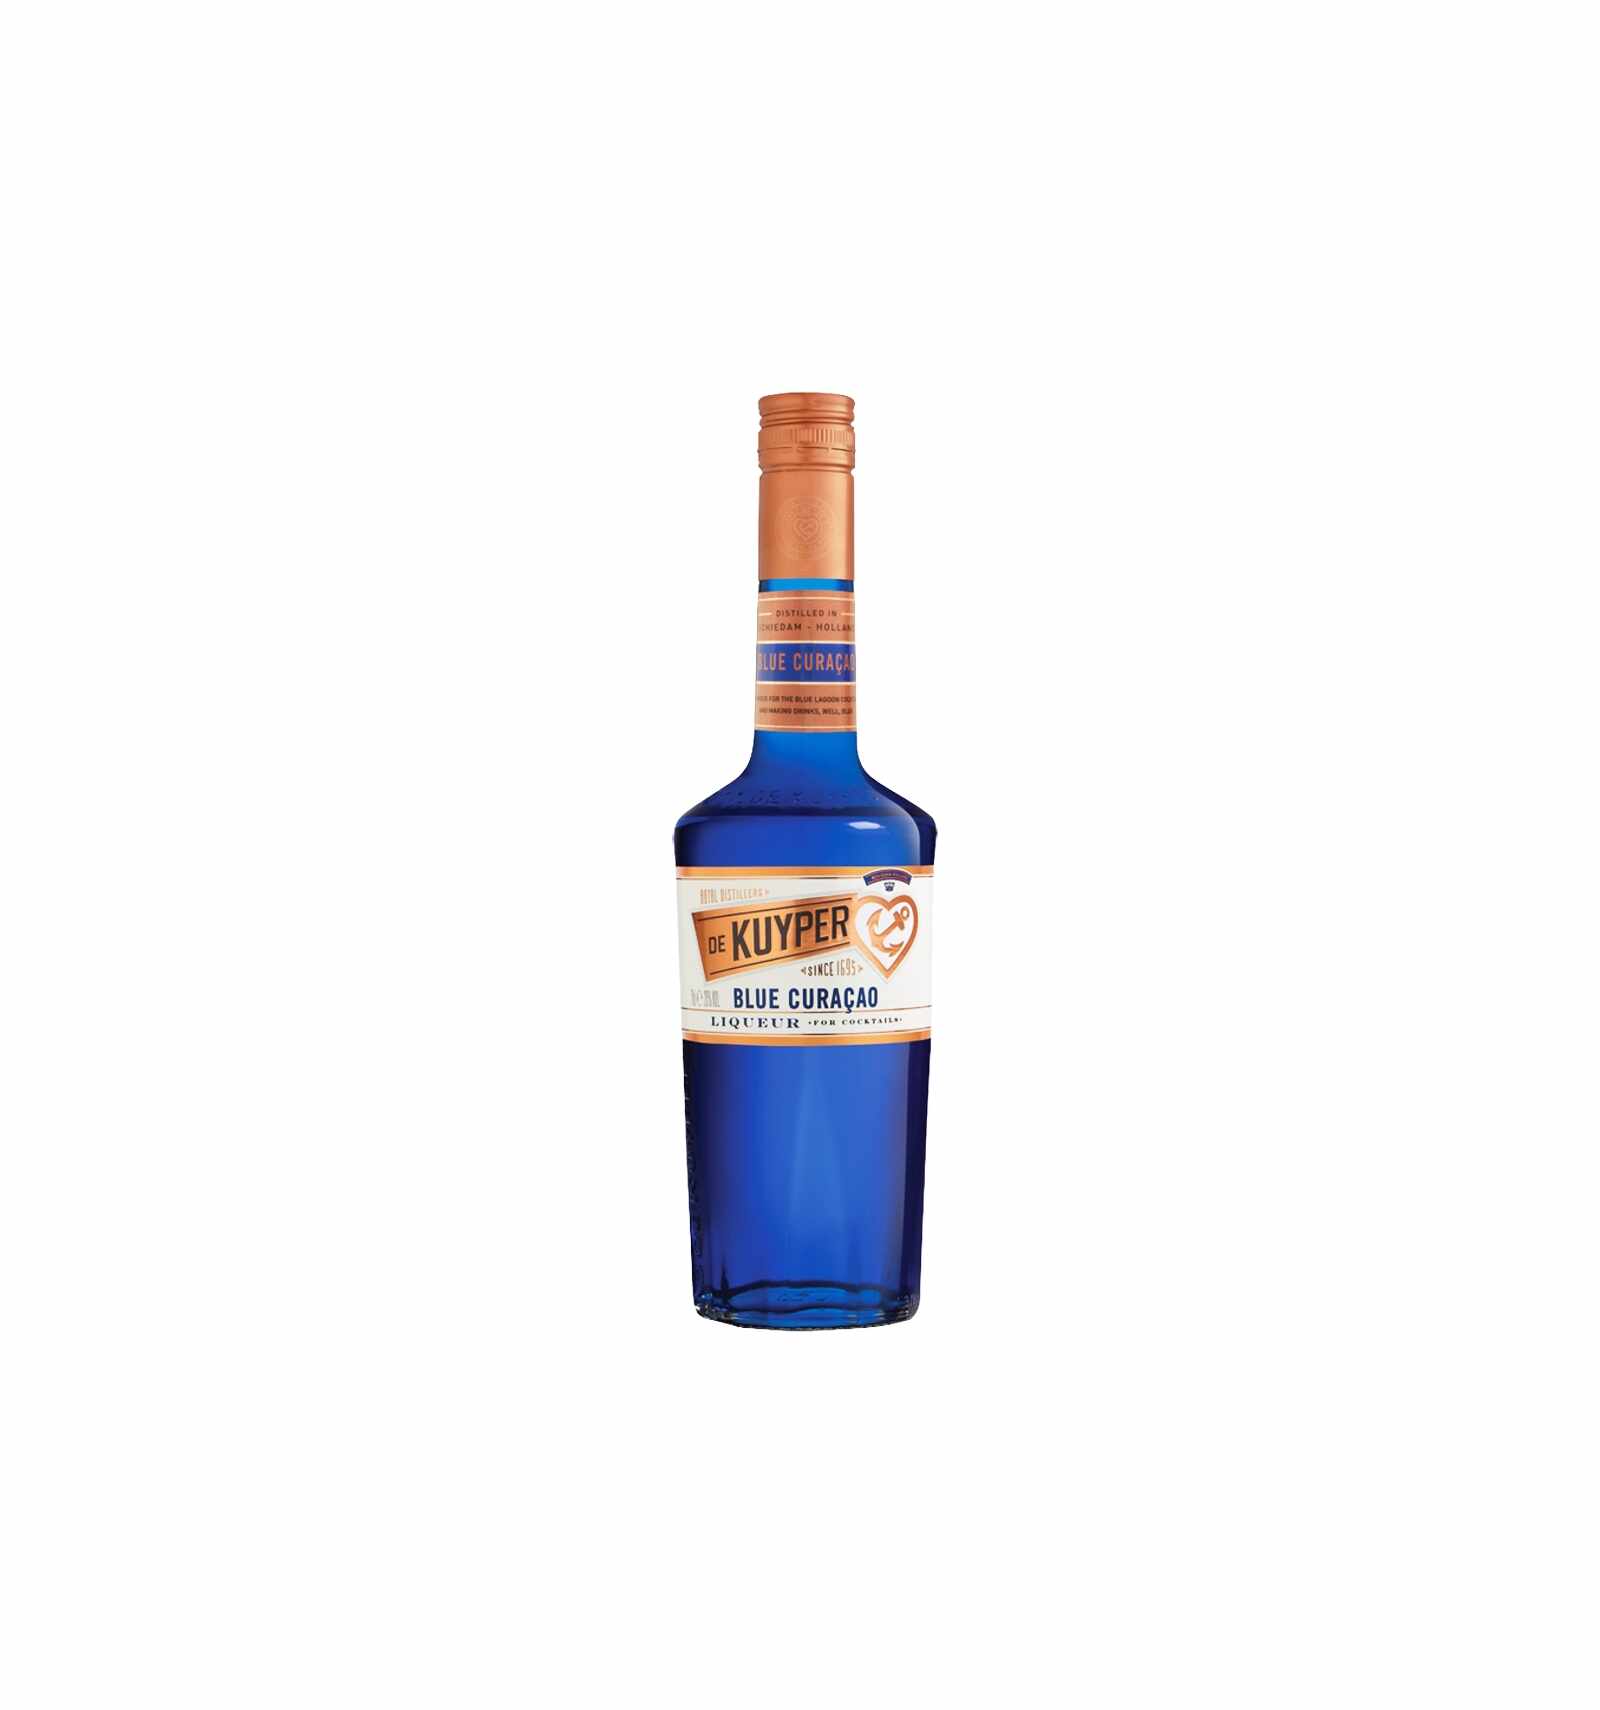 Lichior De Kuyper Blue Curacao 20% alc., 0.7L, Olanda